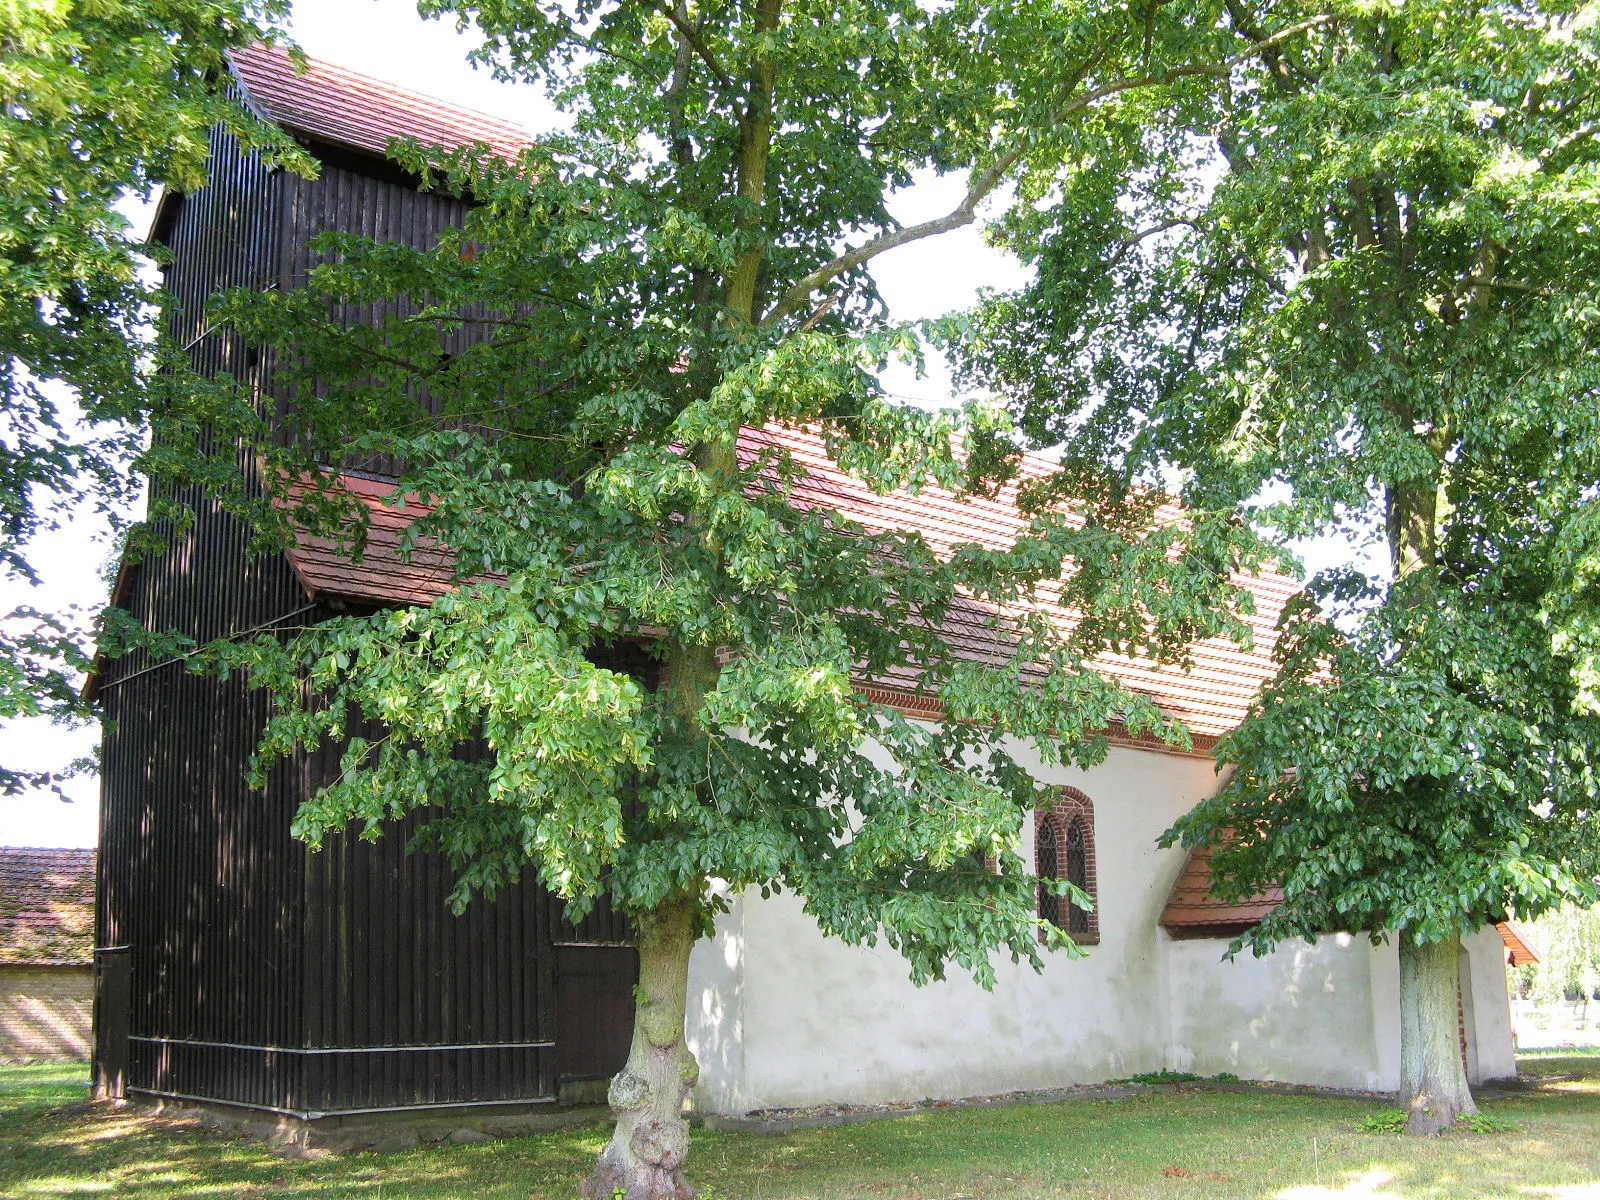 Photo showing: Church in Kieve, disctrict Mecklenburgische Seenplatte, Mecklenburg-Vorpommern, Germany